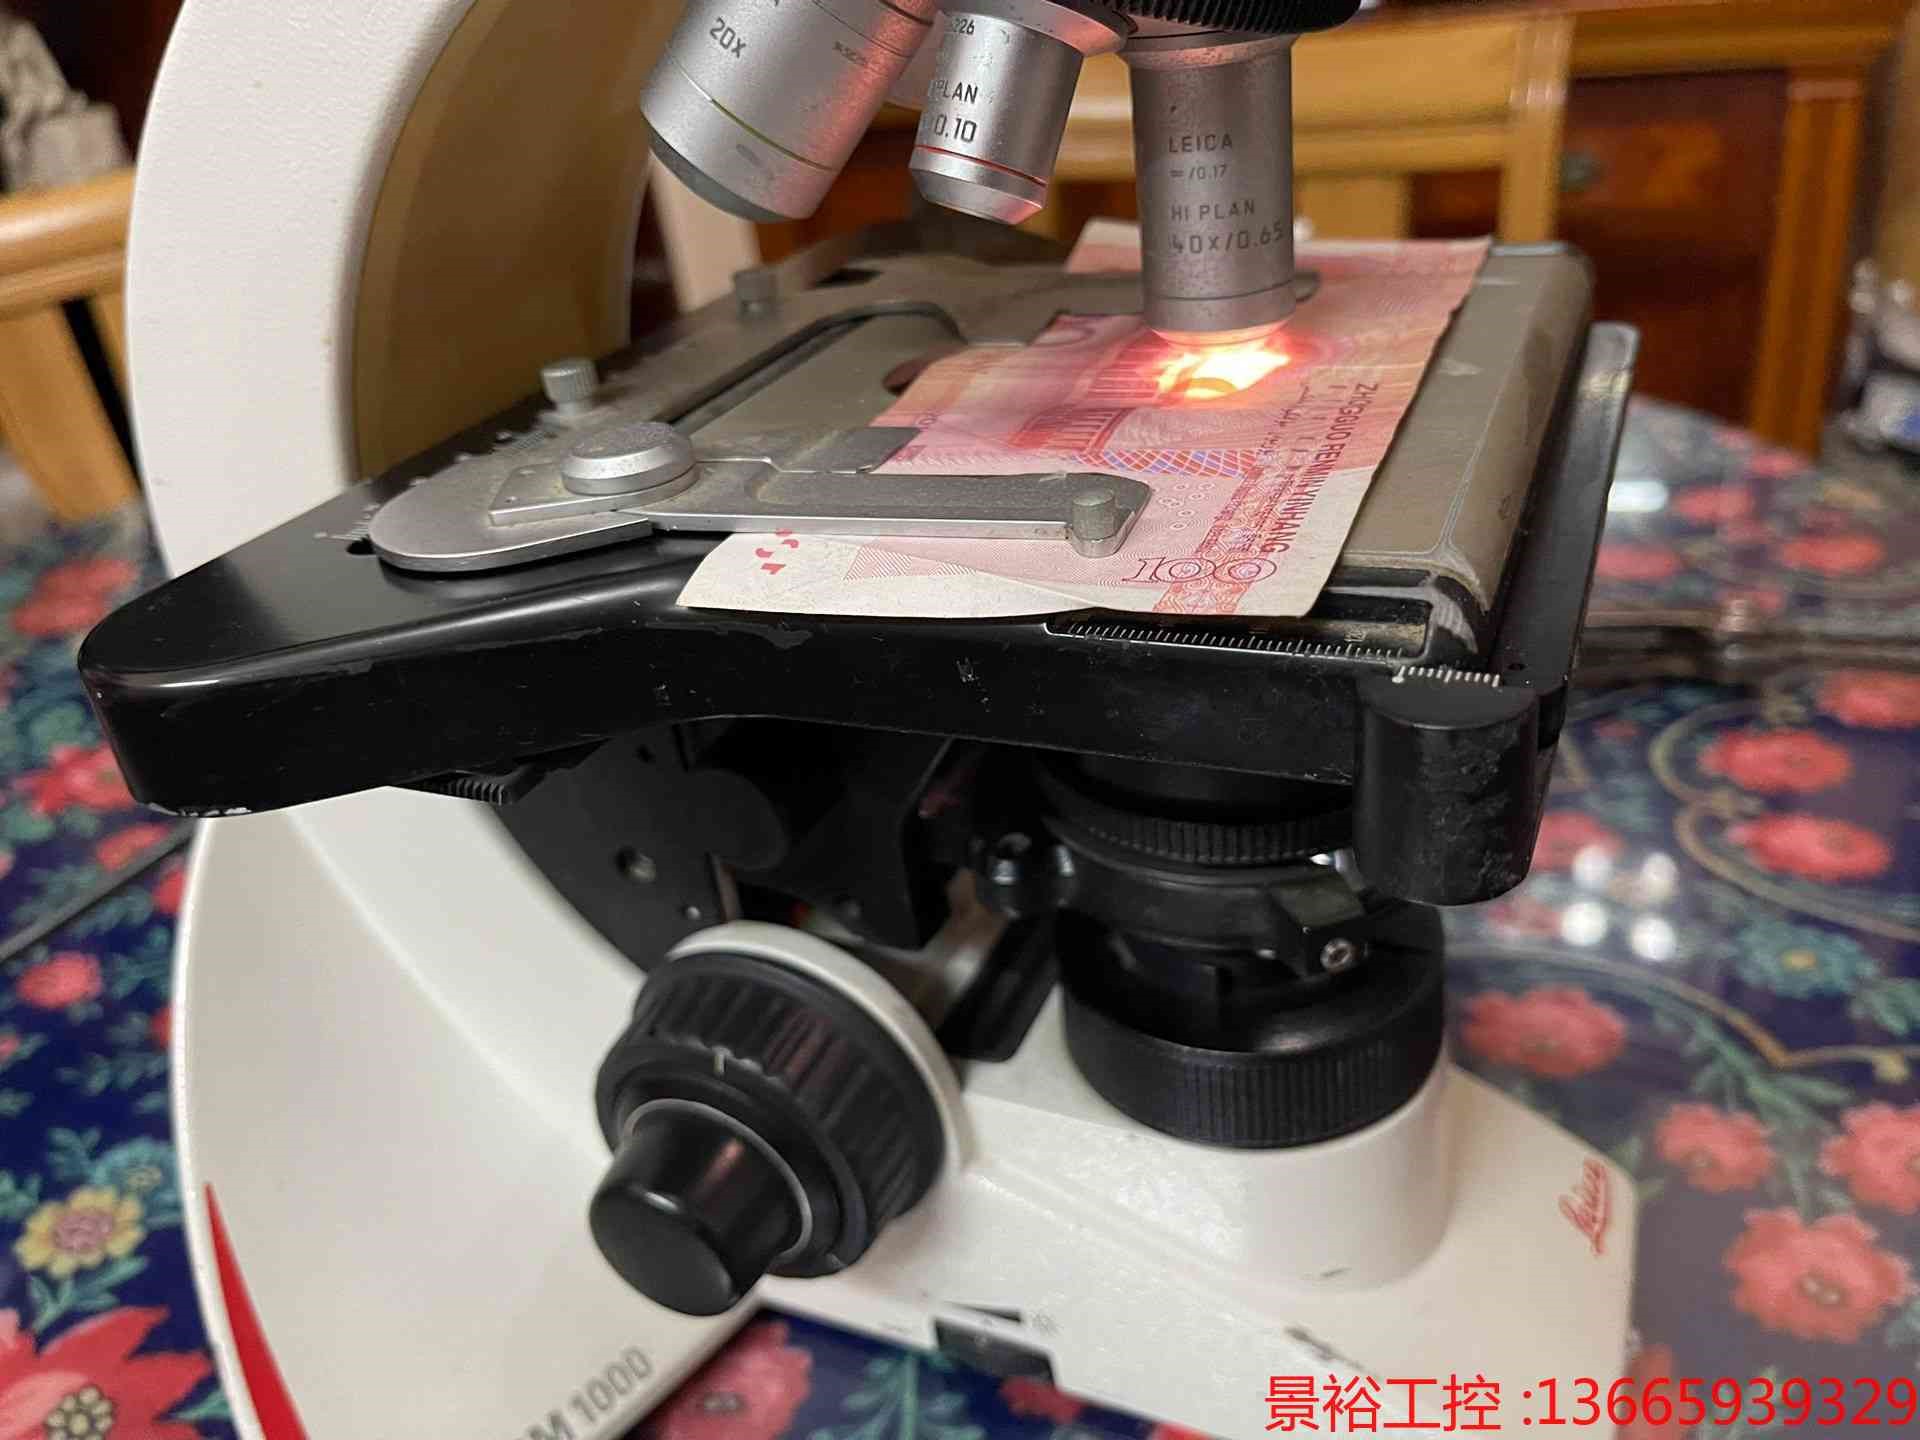 原装德国科研级显微镜Leica徕卡显微镜 DM1000三目显